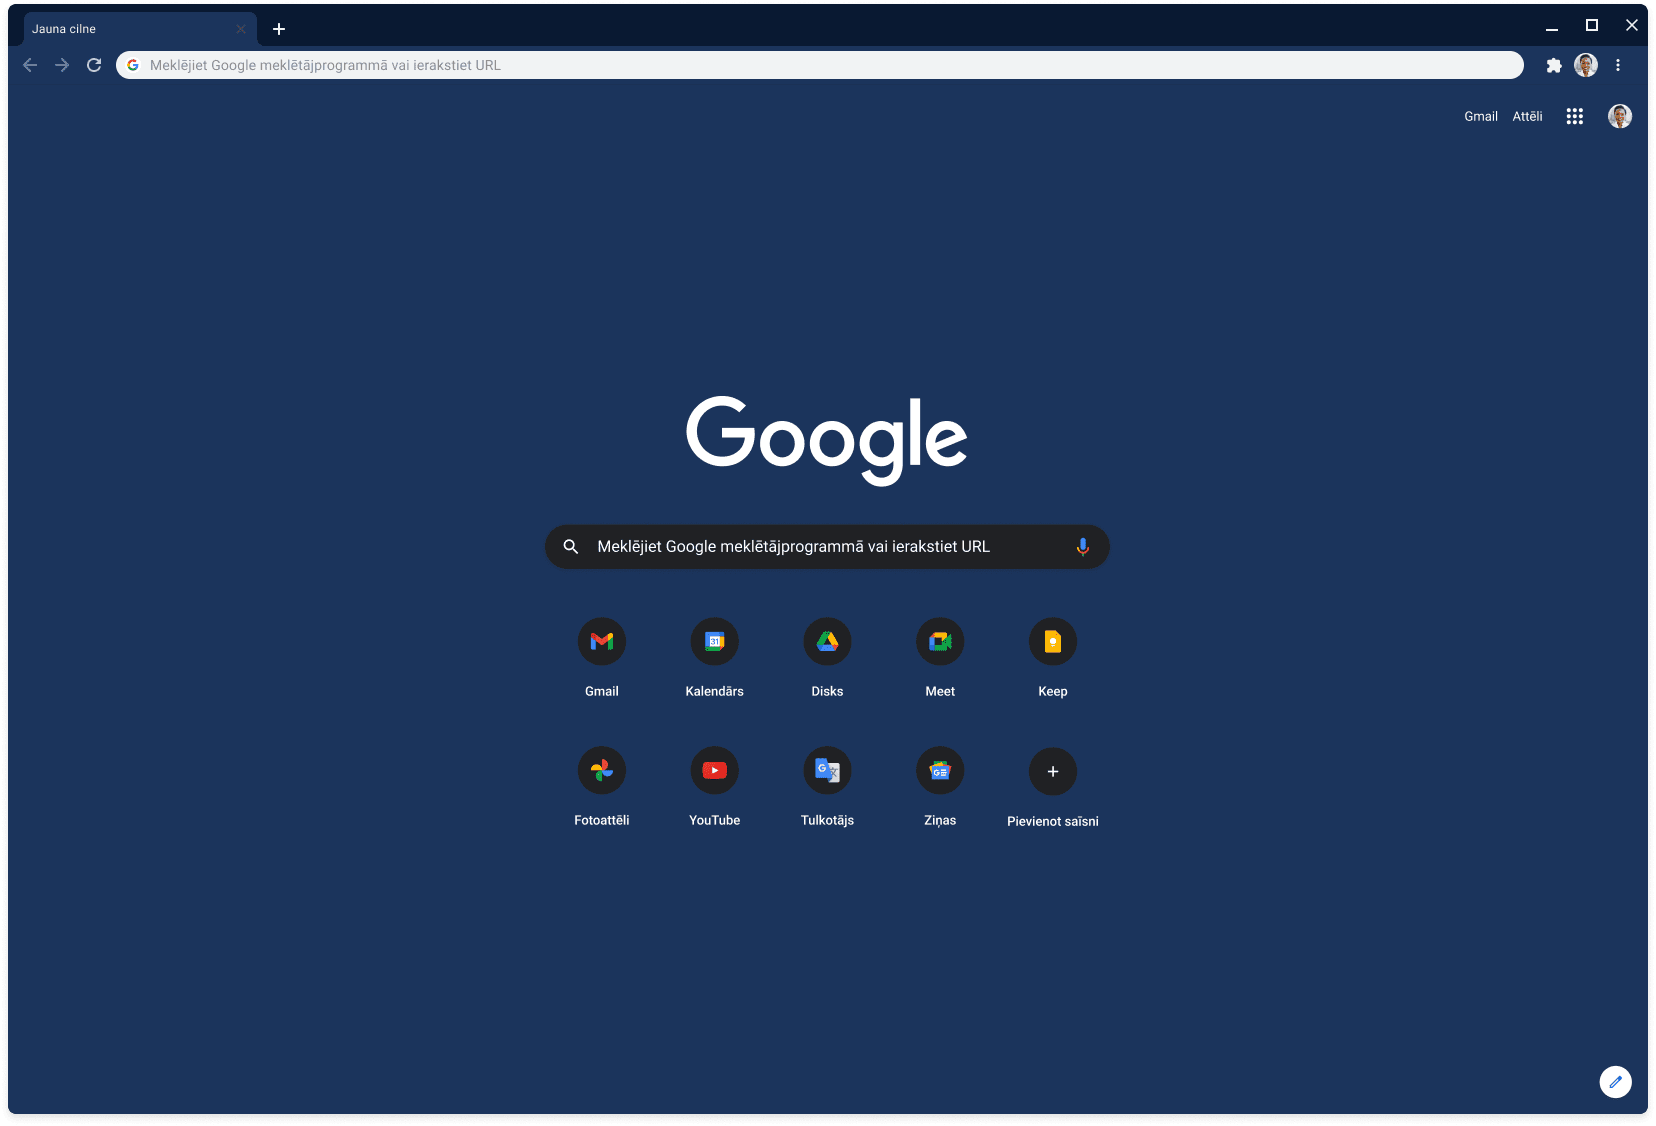 Pārlūka Chrome logā (ar tumši zilo motīvu) tiek rādīta vietne Google.com.